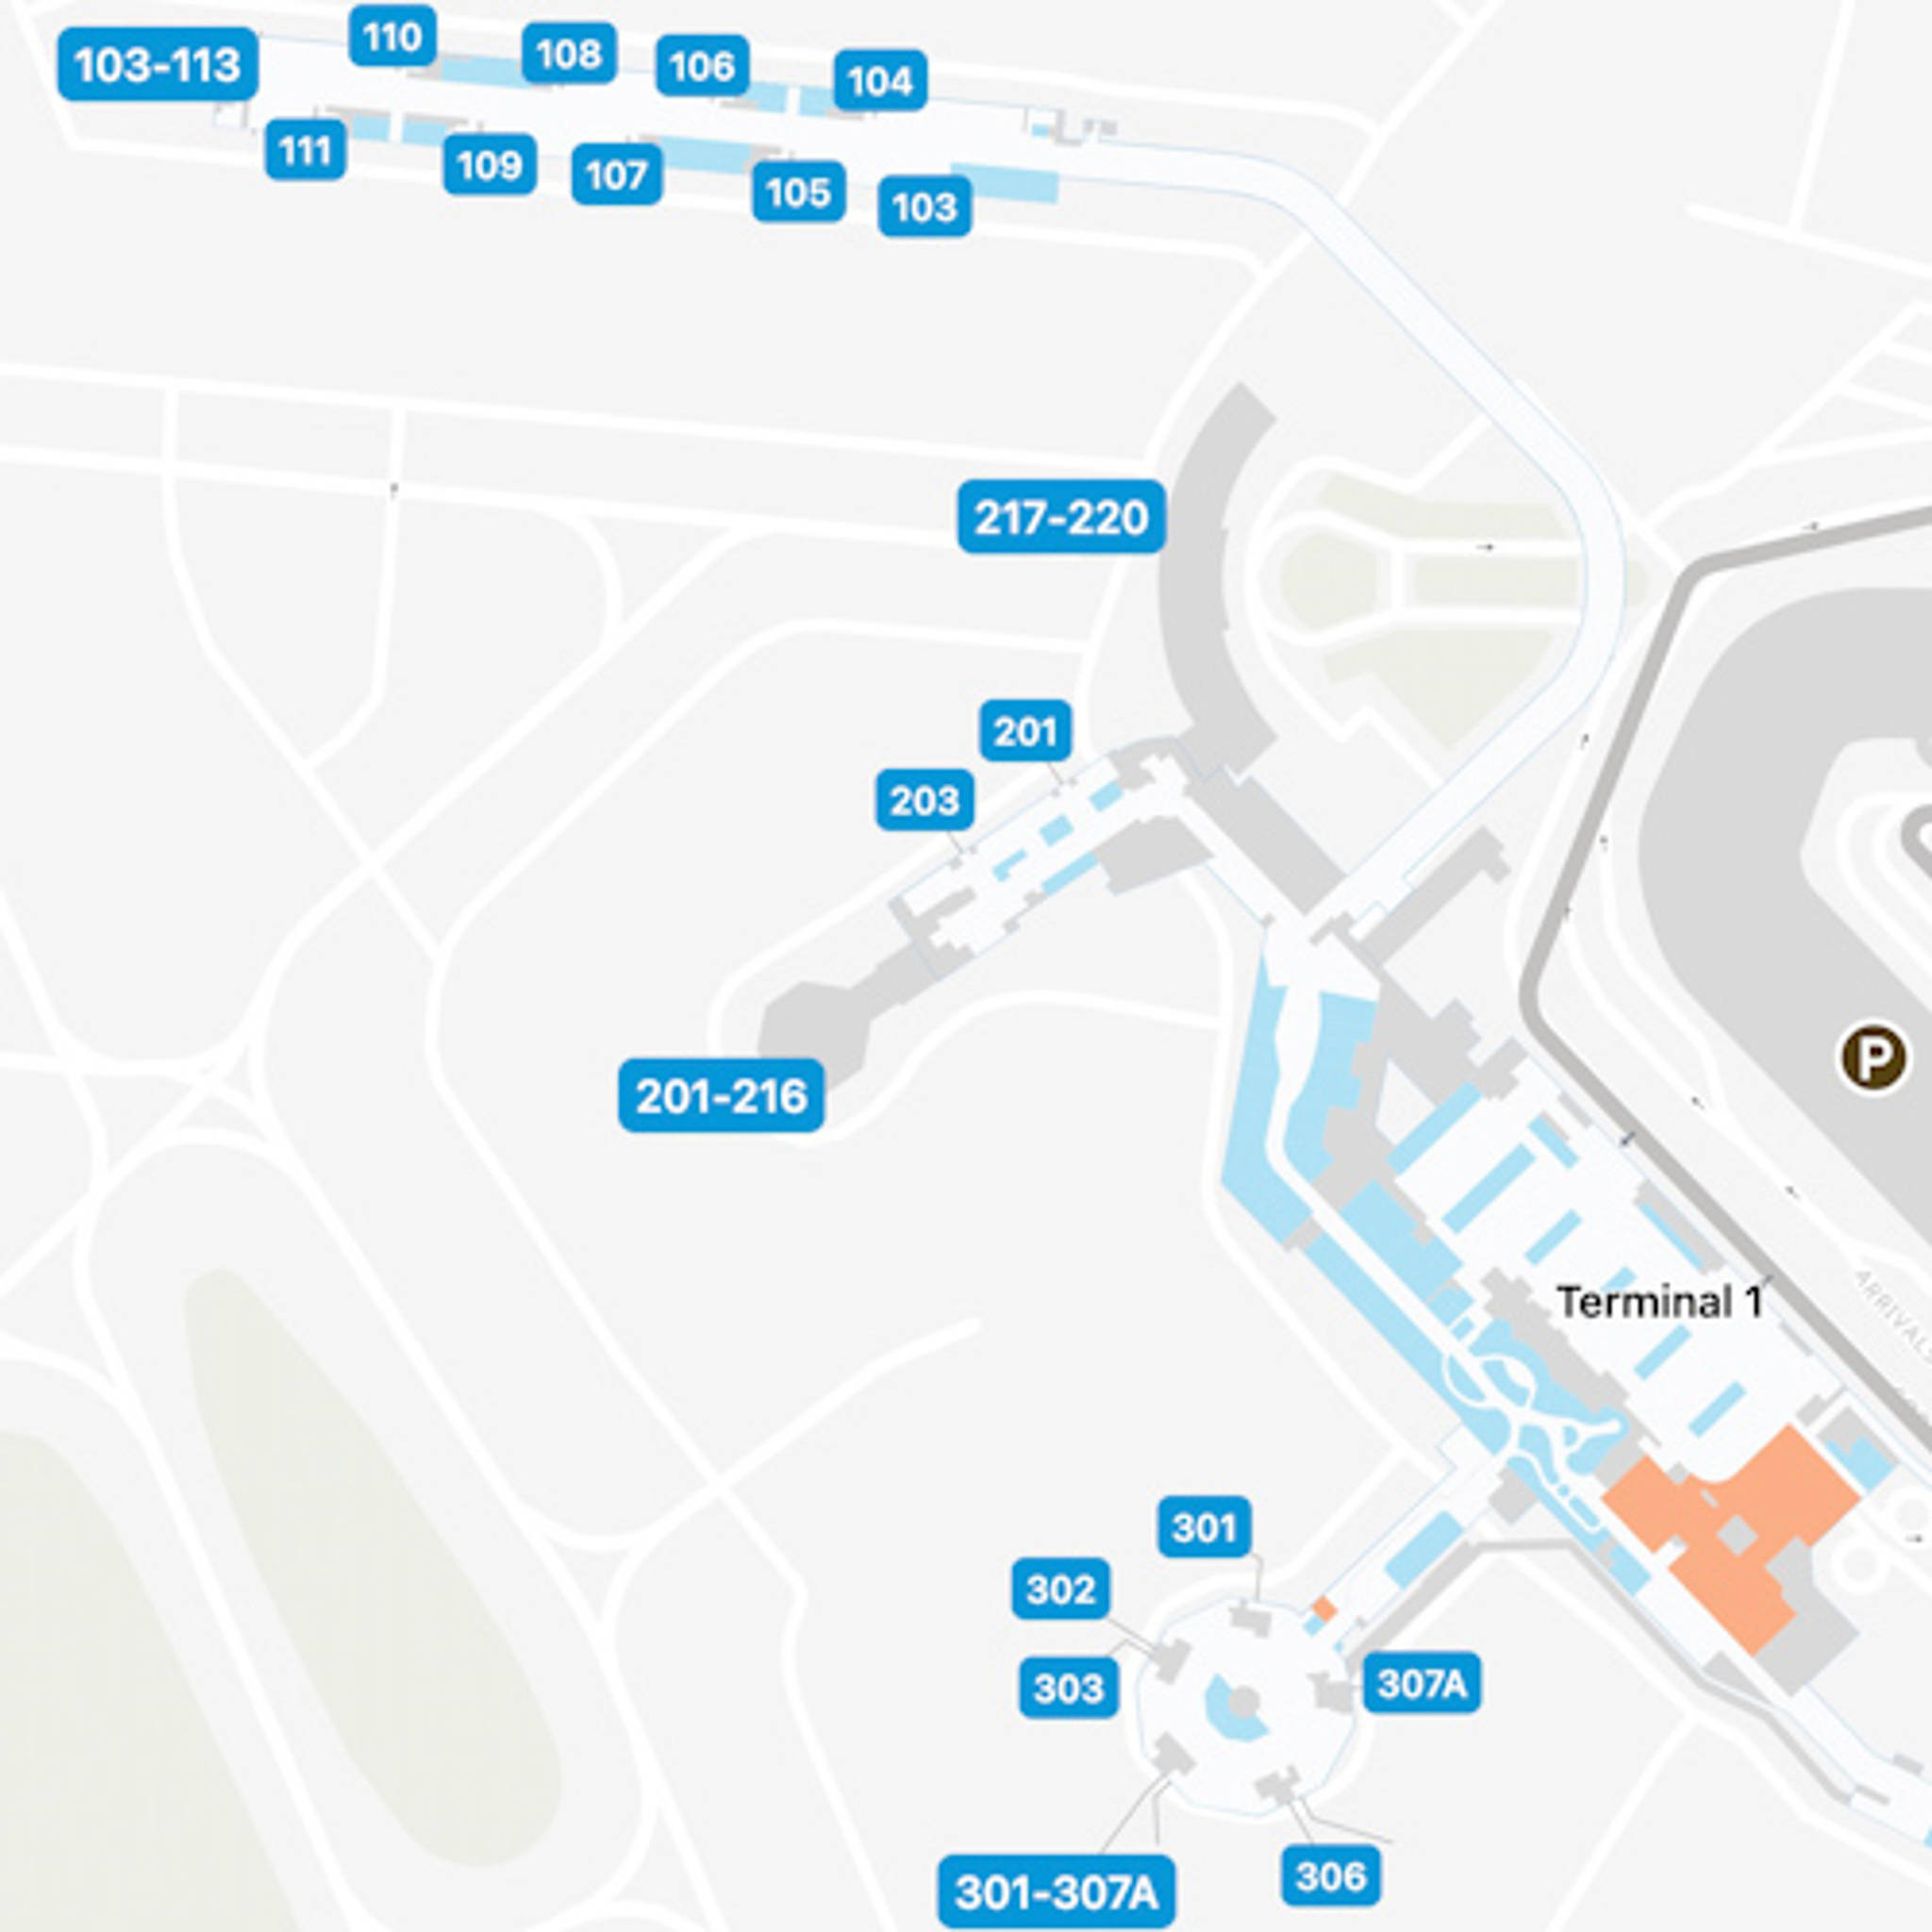 Dublin Airport DUB Terminal 1 Map